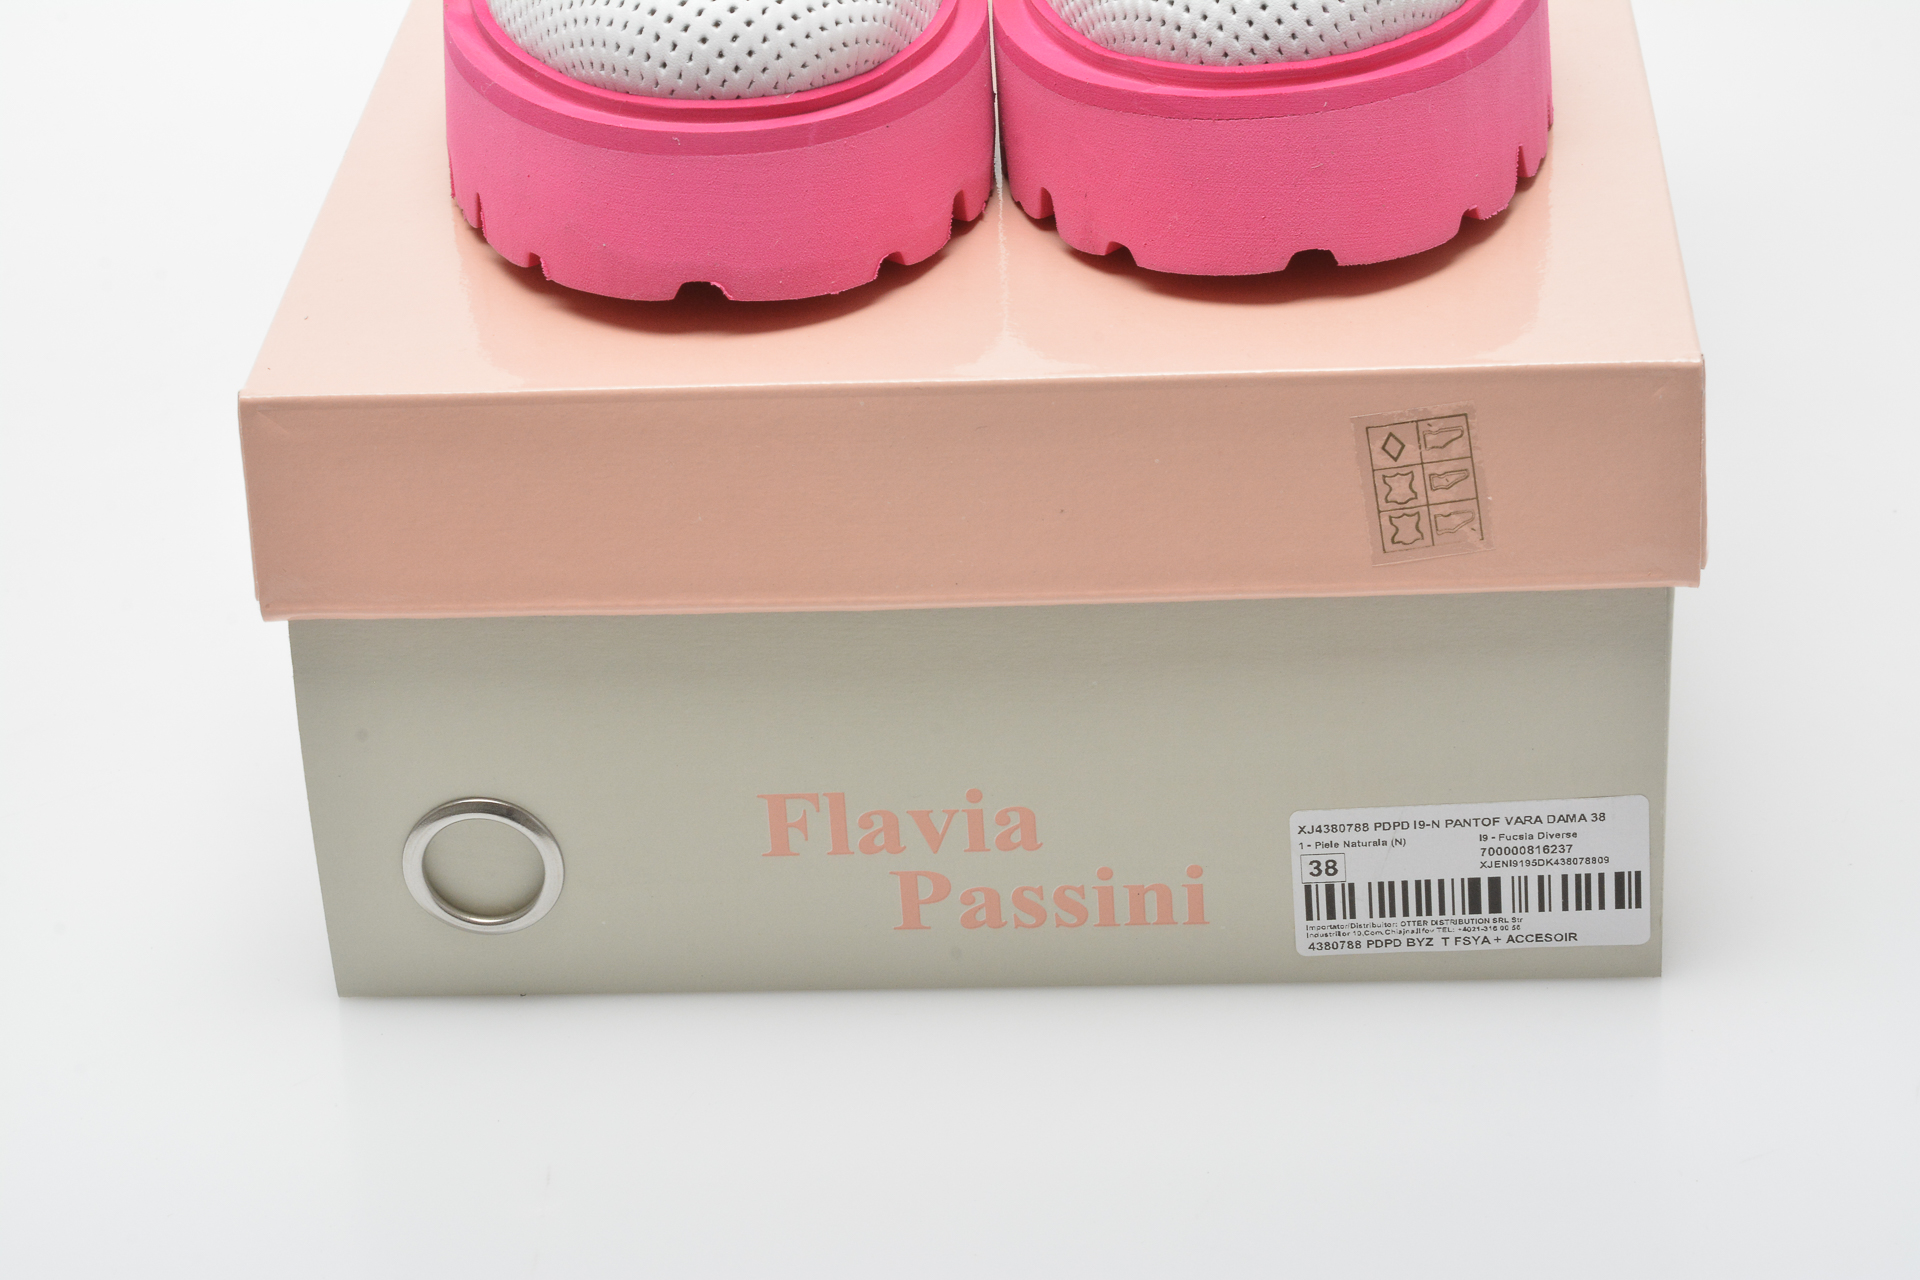 Pantofi FLAVIA PASSINI fucsia, 4380788, din piele naturala Flavia Passini